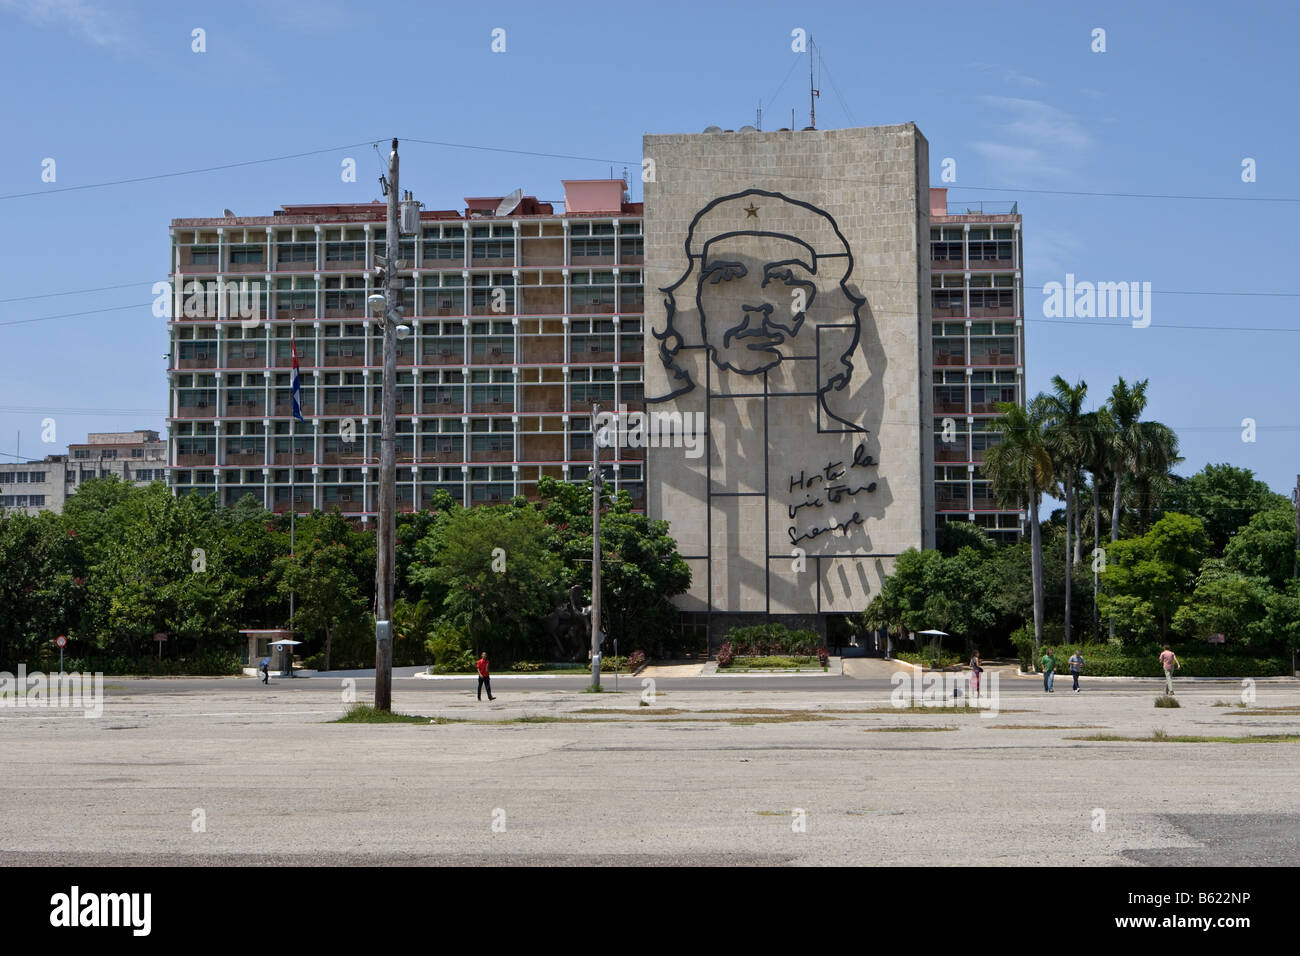 Interior ministry and image of Che Guevara on the Plaza de la Revolucion Square, Havana, Cuba, Caribbean Stock Photo